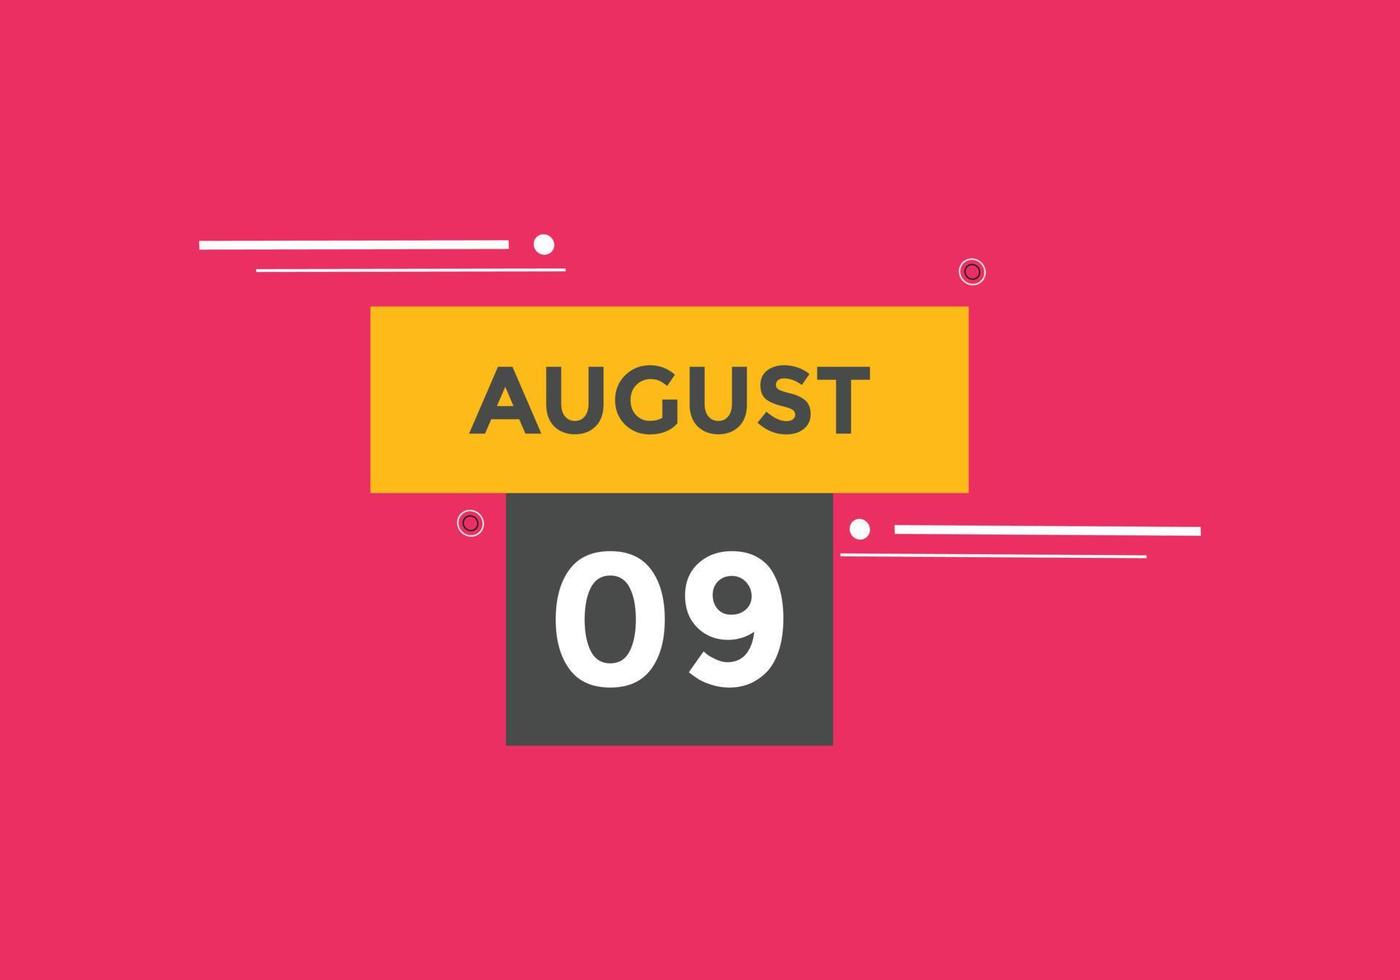 9. August Kalendererinnerung. 9. august tägliche kalendersymbolvorlage. Kalender 9. August Icon-Design-Vorlage. Vektor-Illustration vektor